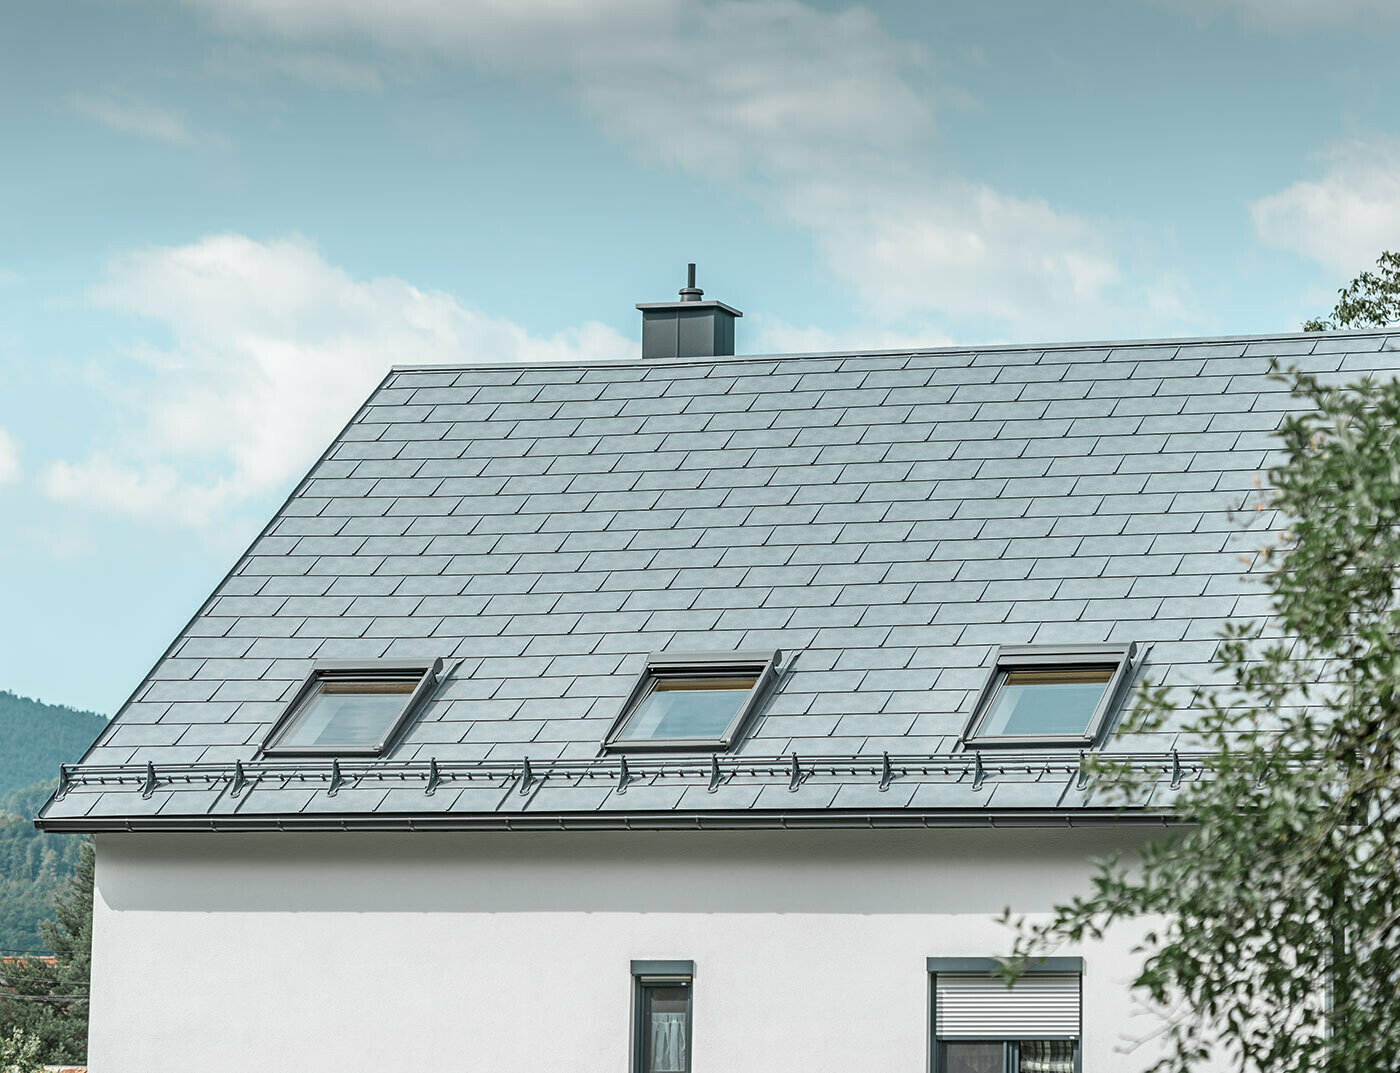 Maison individuelle classique avec toit en pente et trois fenêtres de toit, recouverte de R.16 en gris pierre et d'une façade en plâtre blanc